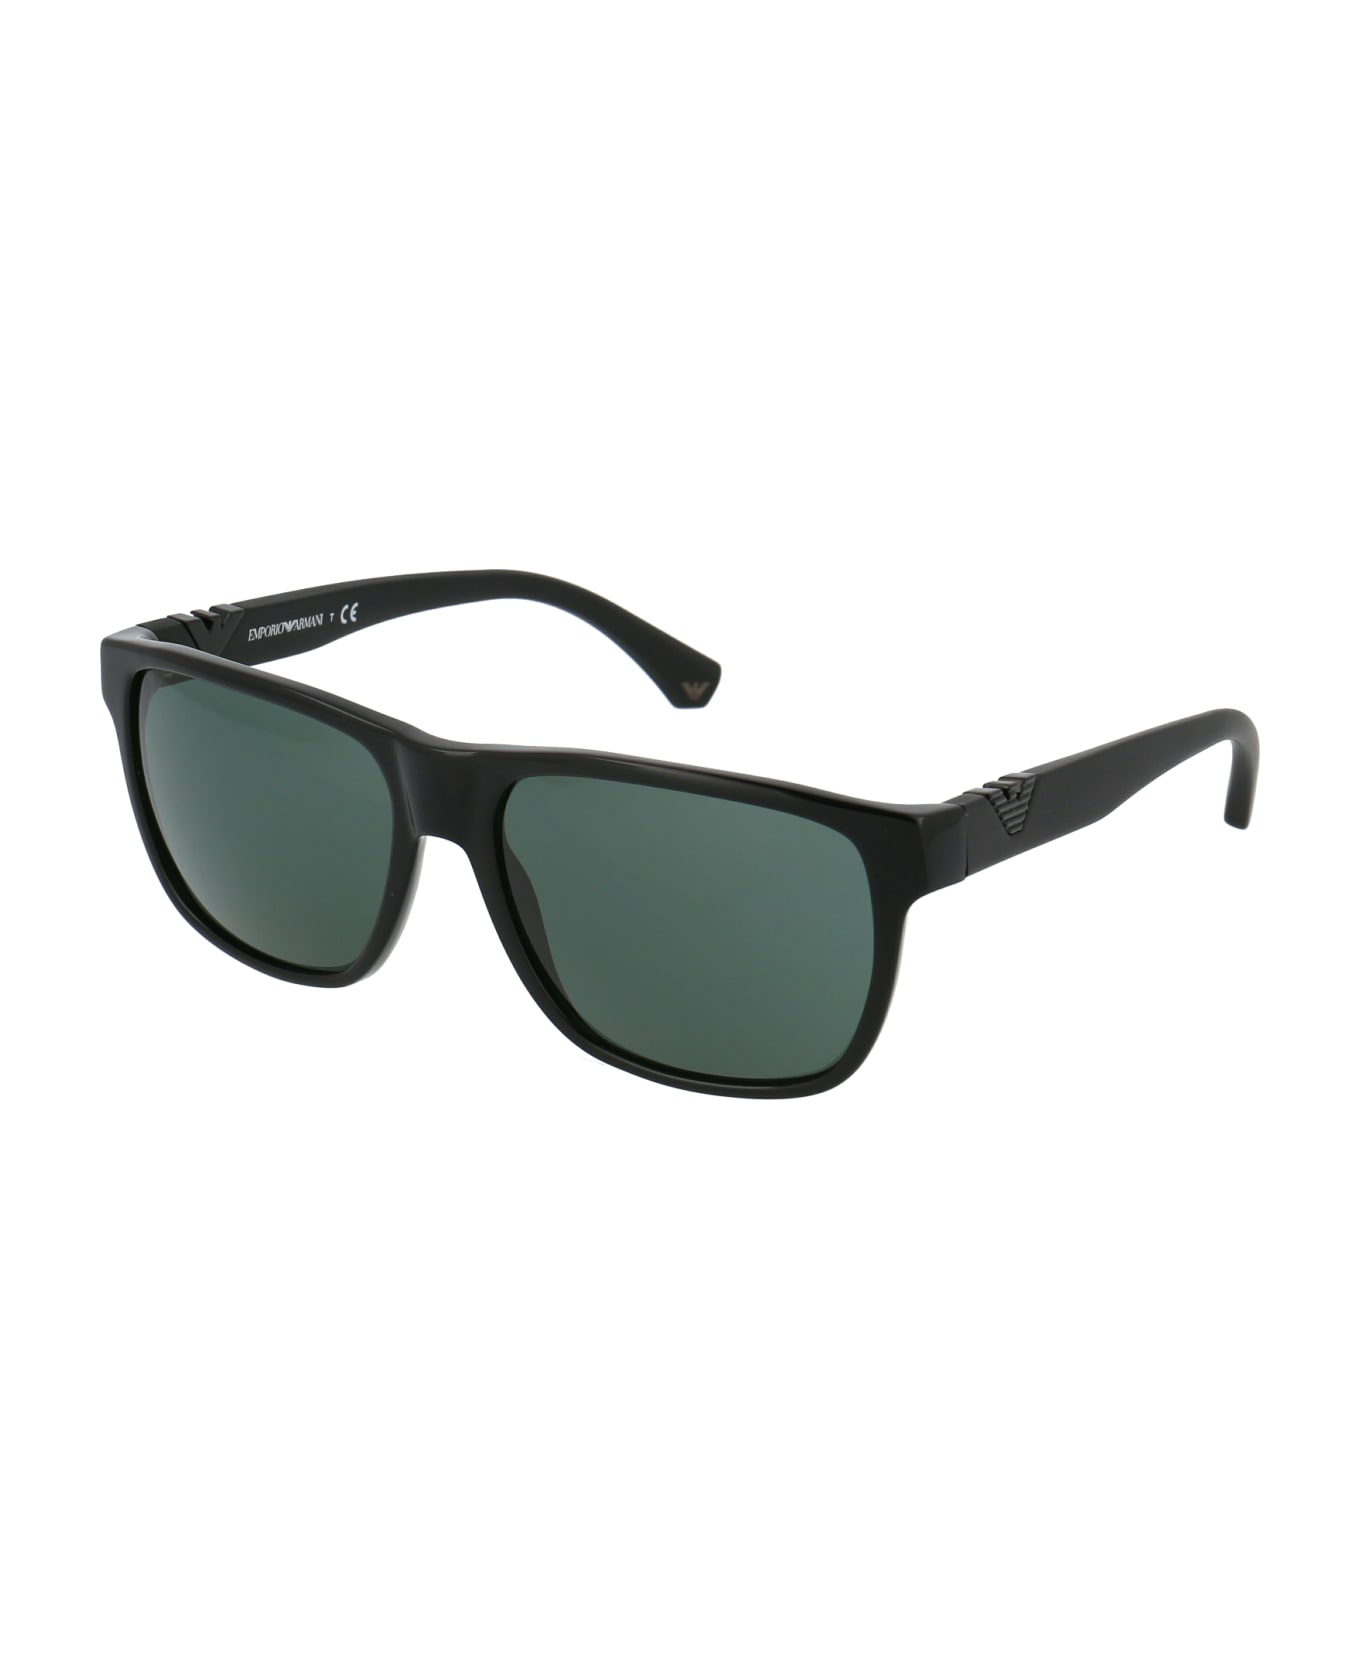 Emporio Armani 0ea4035 Sunglasses - 501771 SHINY BLACK